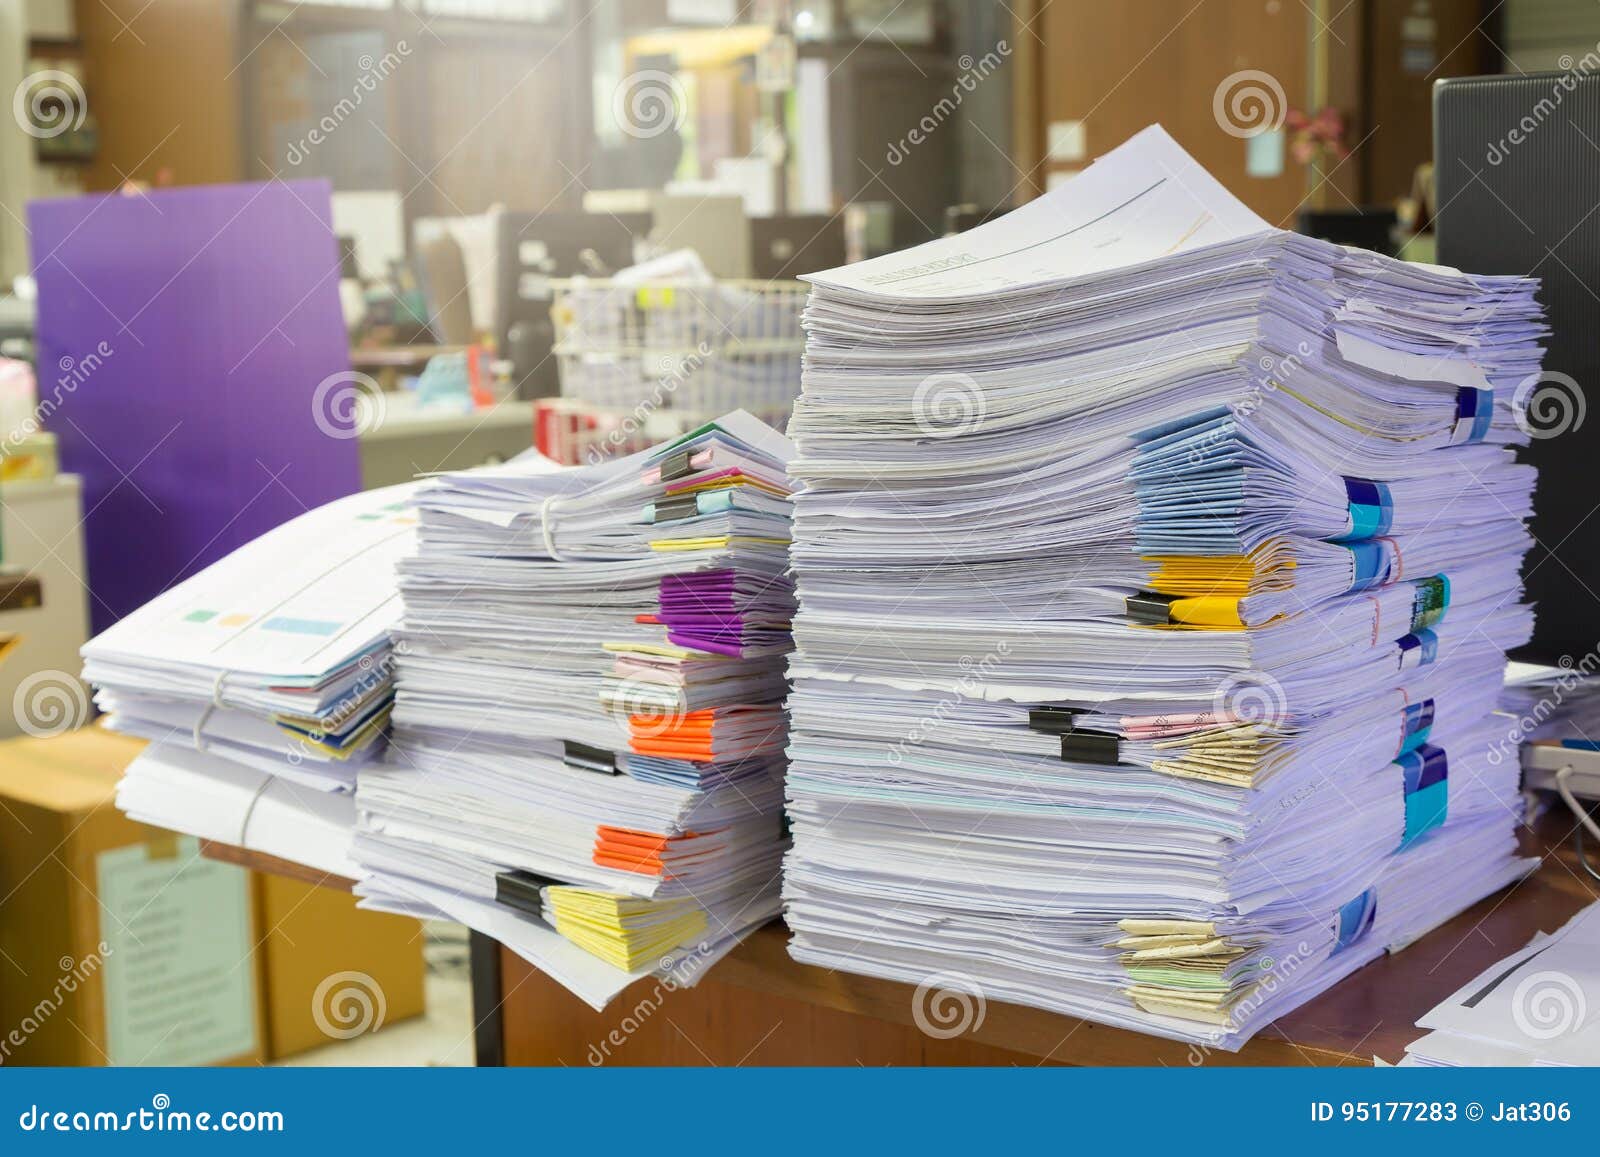 Дела бумага. Стопка бумаг. Много бумаг на столе. Куча бумаг. Стопка бумаг на столе.